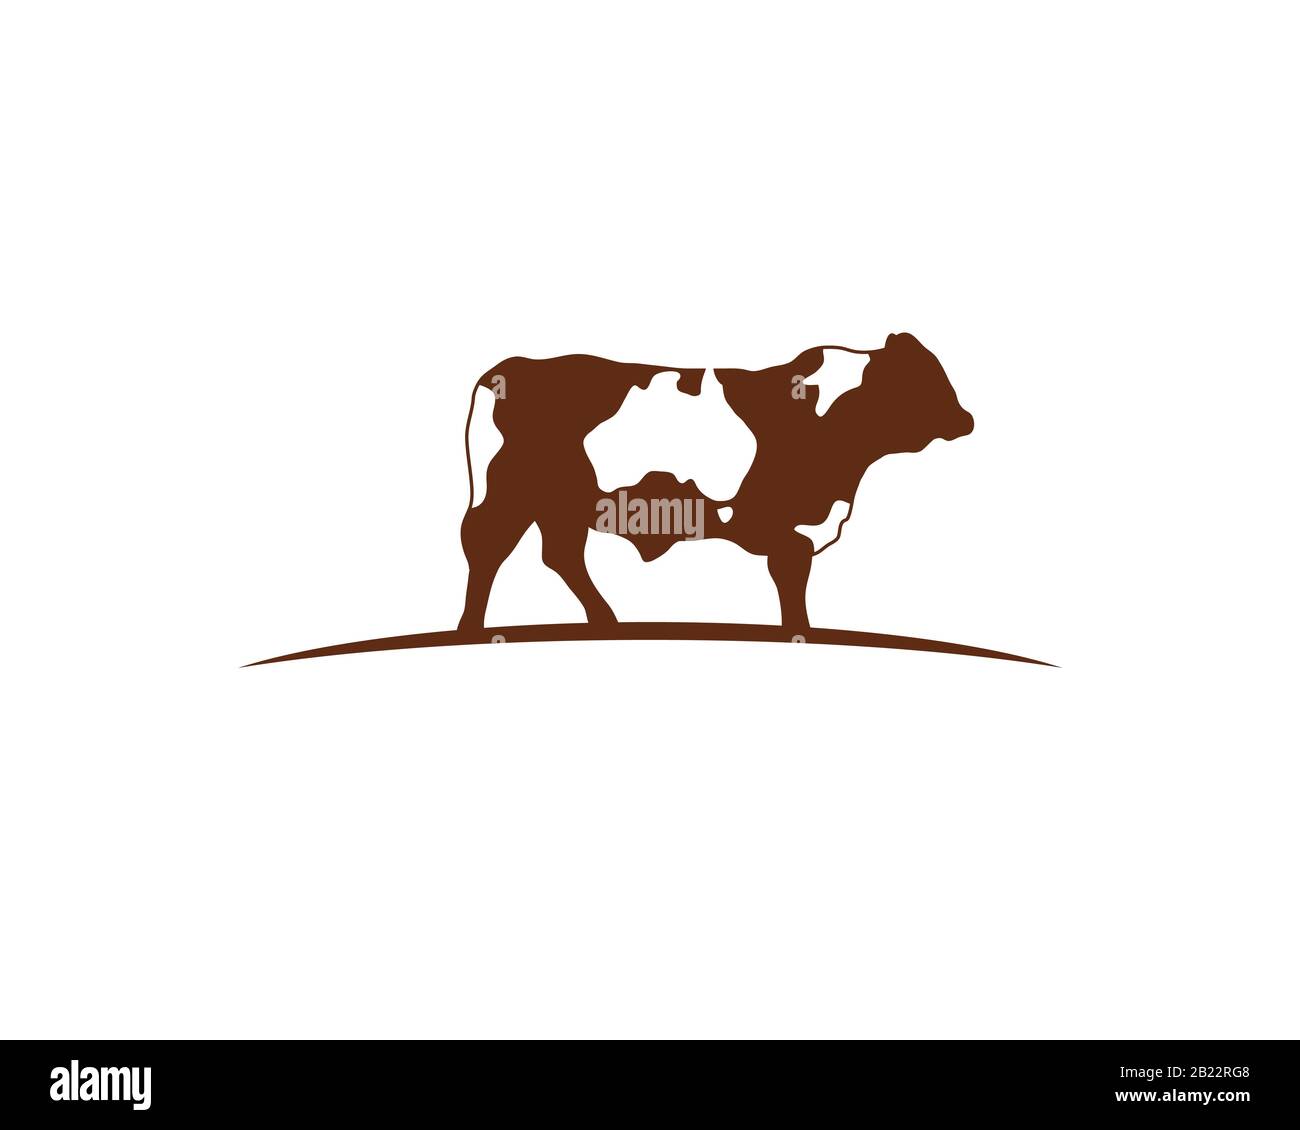 logo d'une vache brune debout sur un sol courbe à l'horizon avec la carte de l'australie comme espace négatif sur toute sa peau Illustration de Vecteur